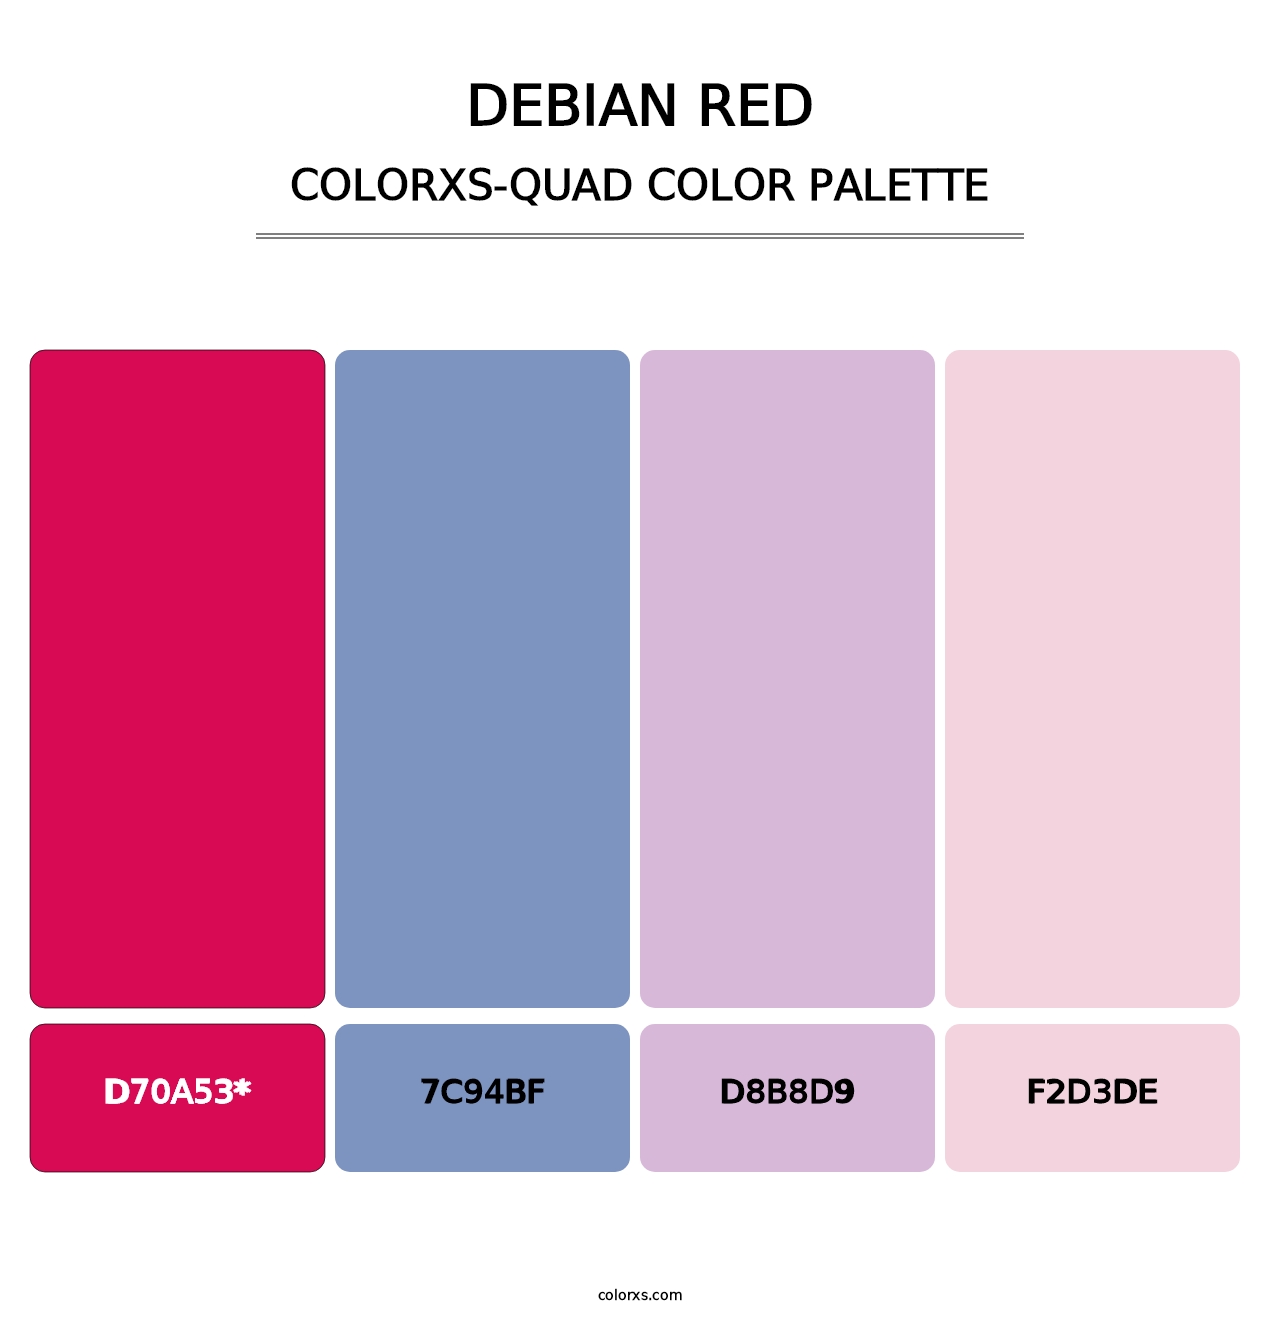 Debian red - Colorxs Quad Palette